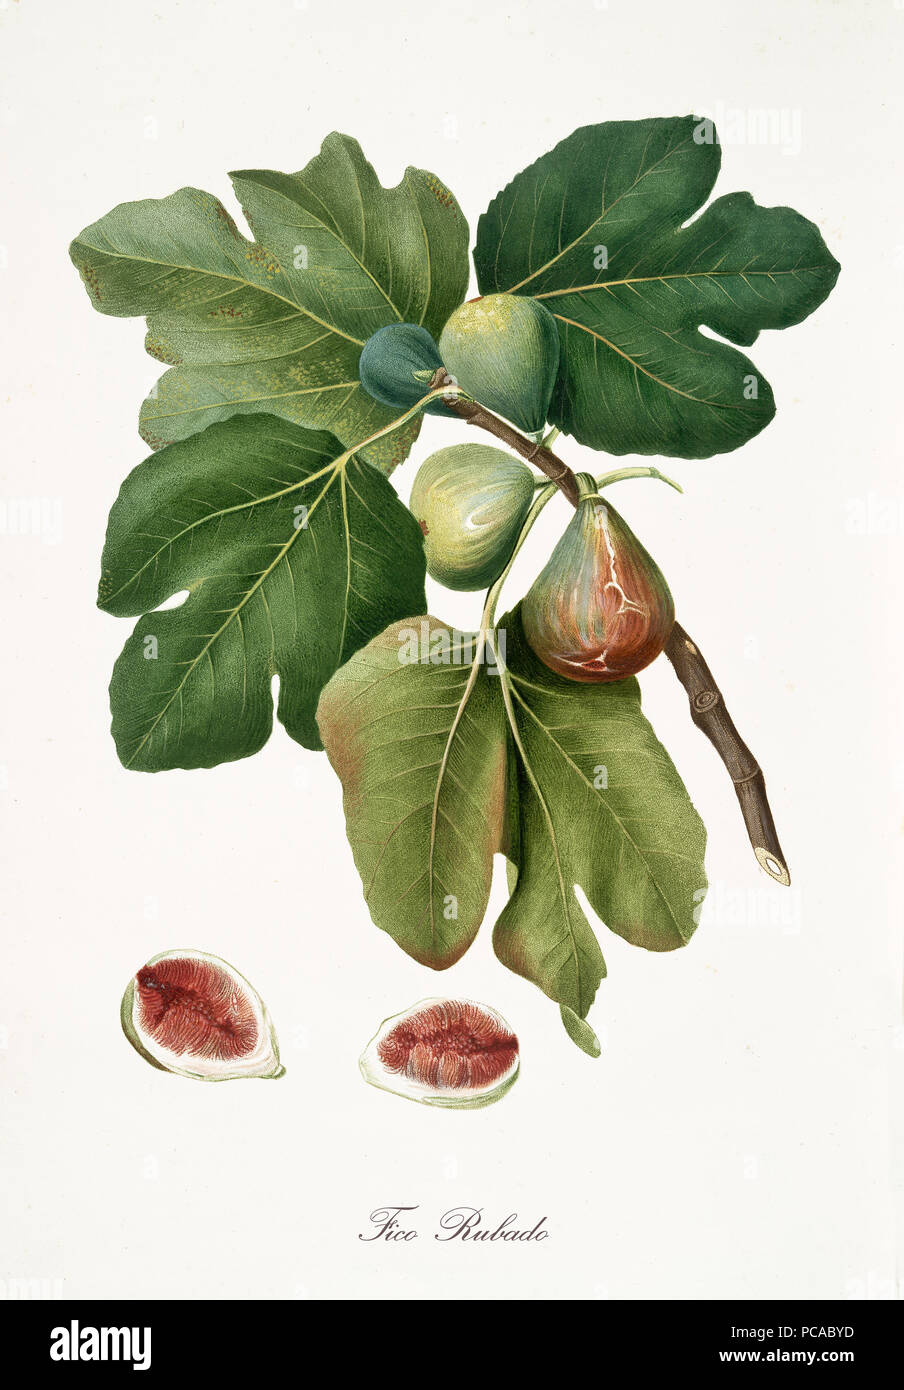 Abb., auch als Rubaldo Bild bekannt, Feigenbaum Blätter und Früchte auf weißem Hintergrund. Alte botanische ausführliche Darstellung von Giorgio Gallesio publ. 1817, 1839 Pisa Italien Stockfoto